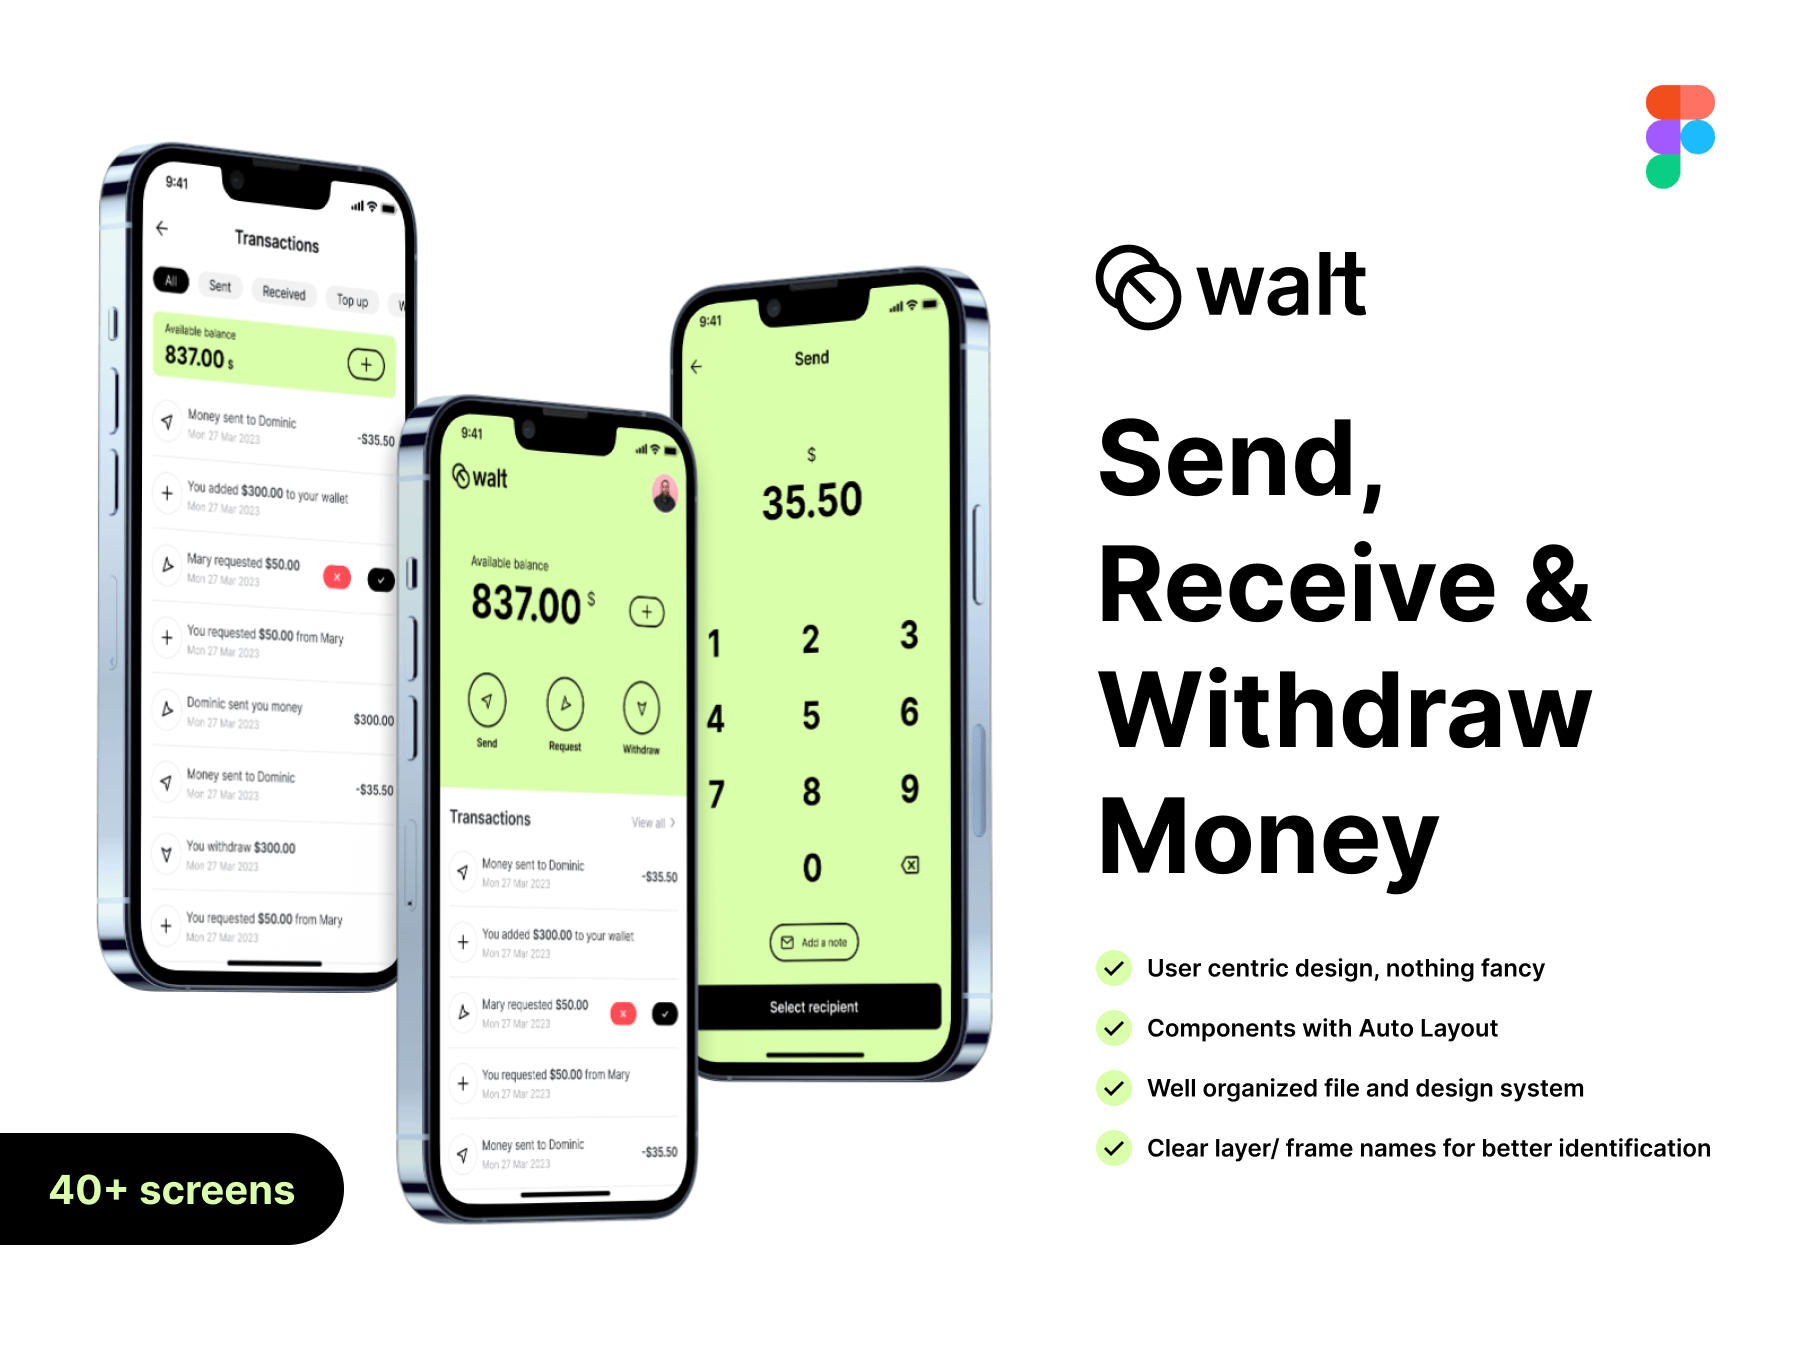 Walt 收款付款提现财务管理电子钱包应用 Walt figma格式-UI/UX-到位啦UI